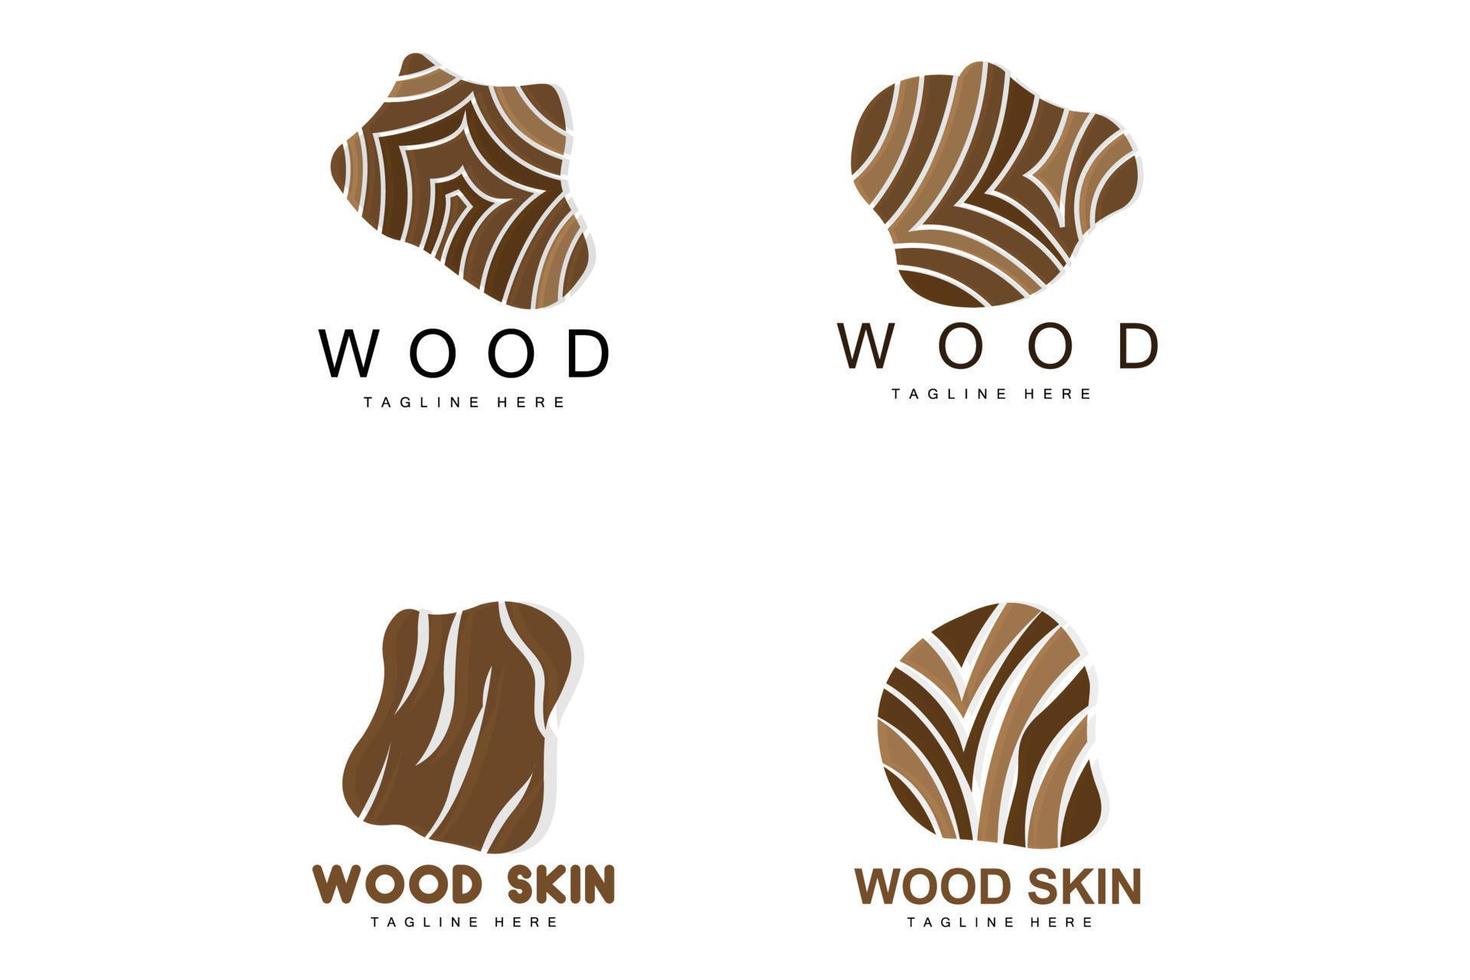 logotipo de camada de madeira design de estrutura de casca de árvore vetor de modelo de floresta